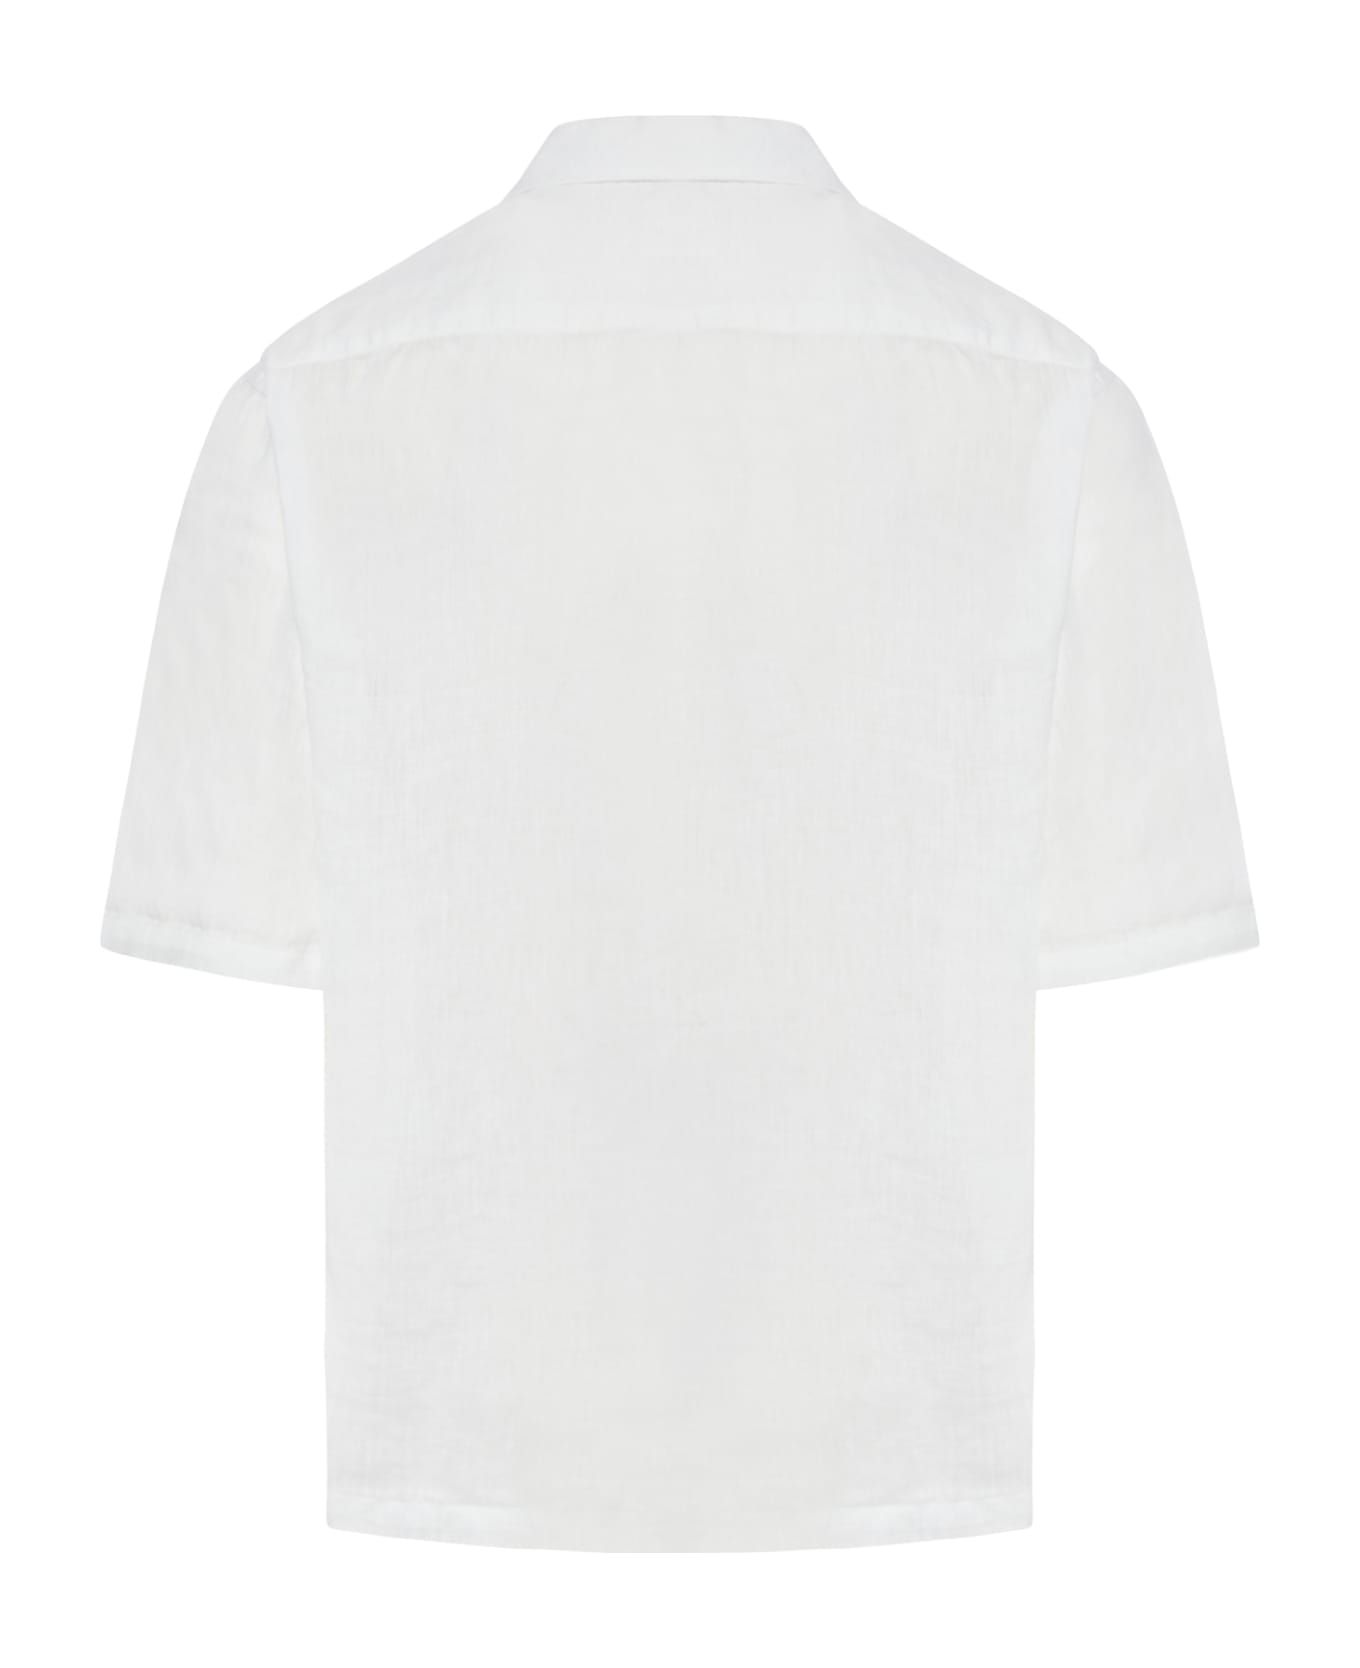 120% Lino Short Sleeve Men Shirt - White